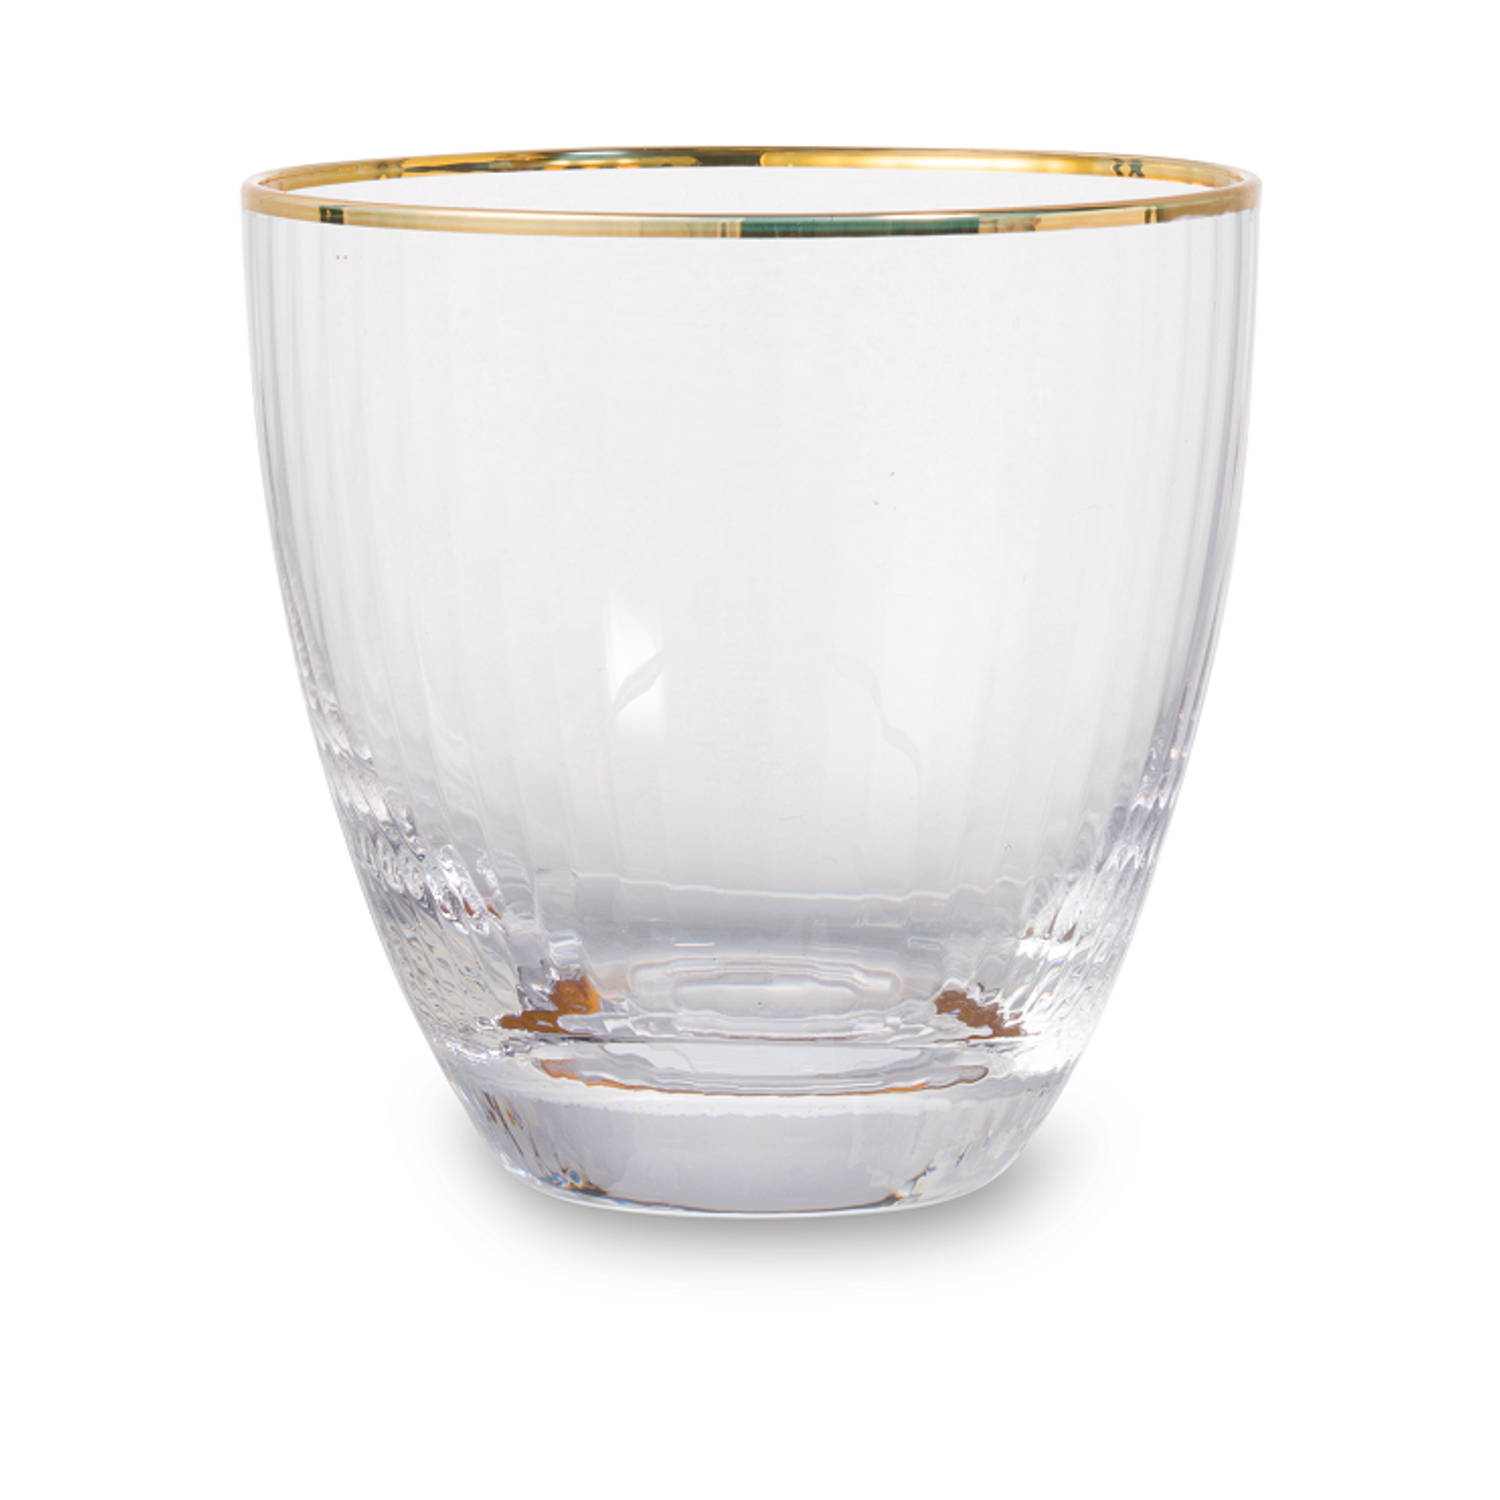 Pickering duif Scully Blokker drinkglas - gouden rand - S/2 | Blokker